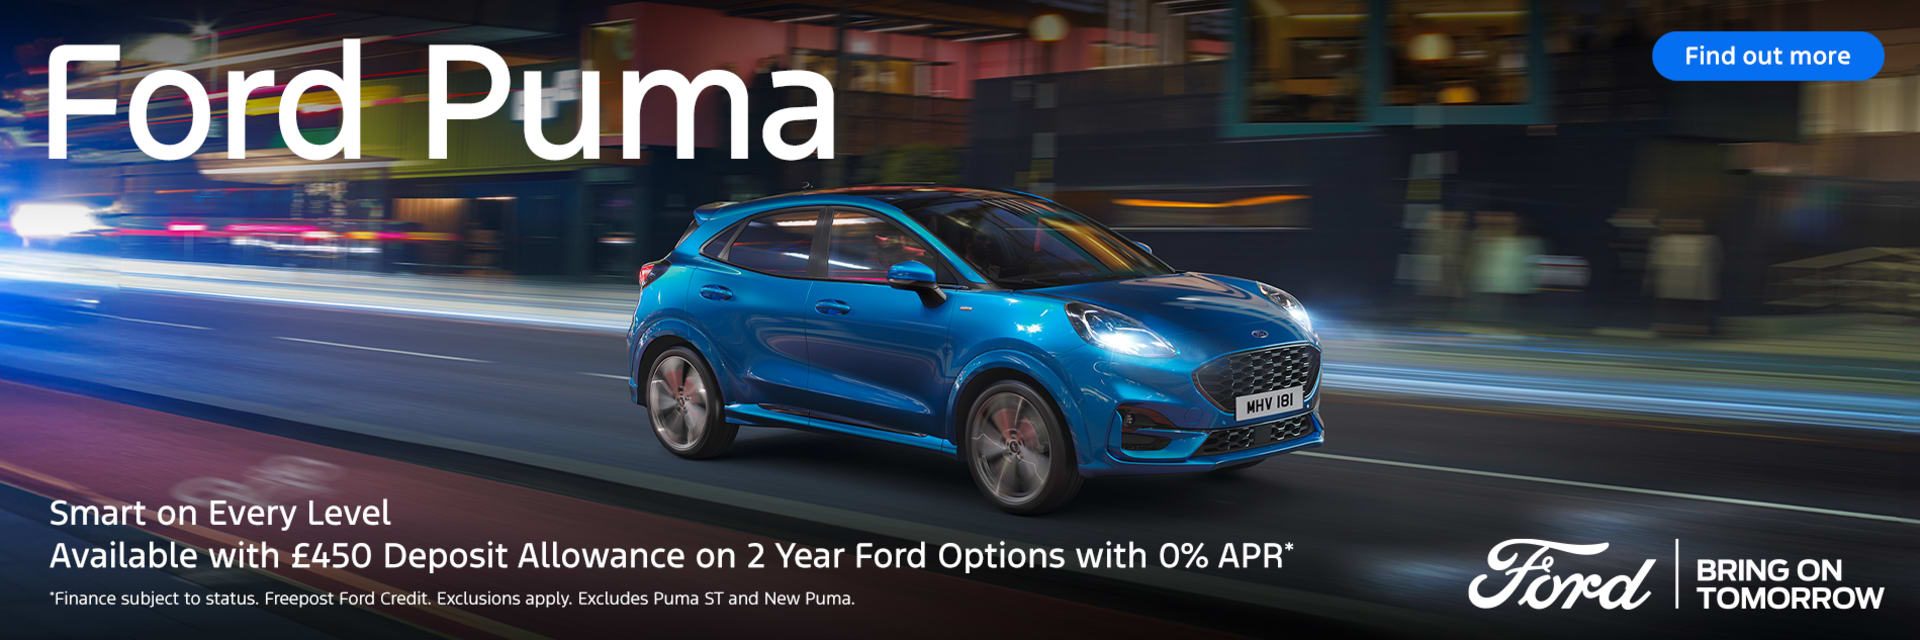 Ford Puma 0% APR on 2 Year Ford Options